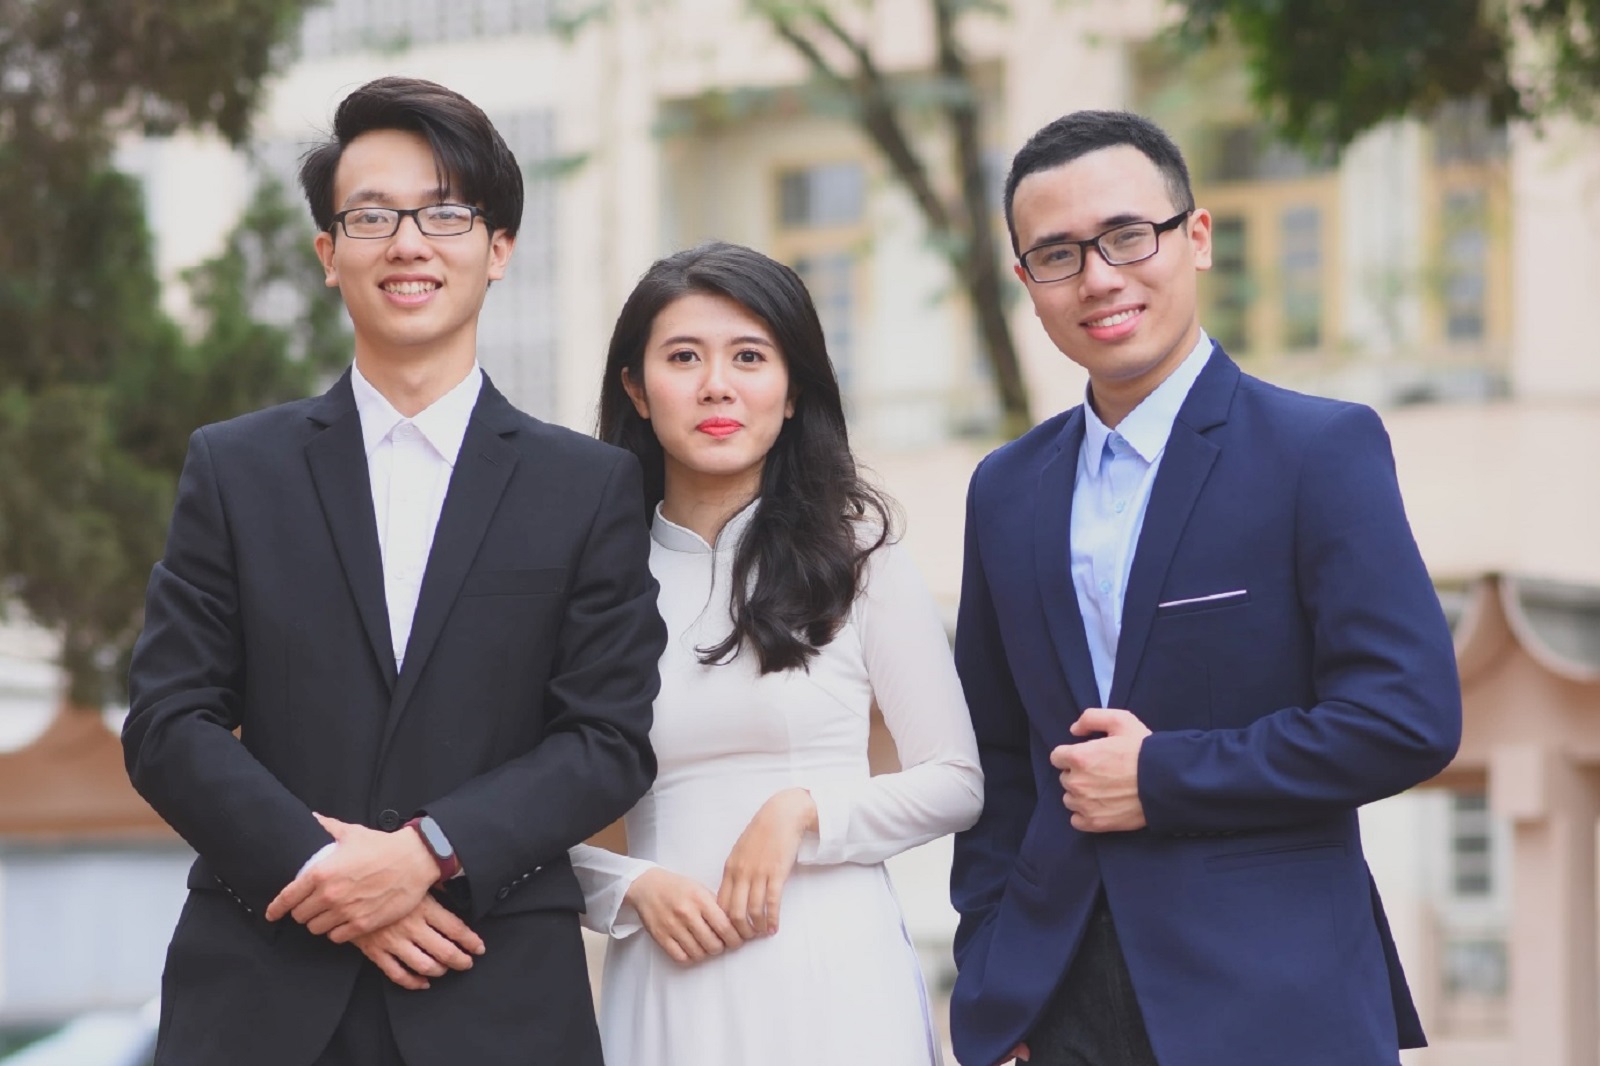  "Nhóm bạn tri kỷ" giành giải Nhất NCKH sinh viên Trường ĐHKT năm học 2019 - 2020